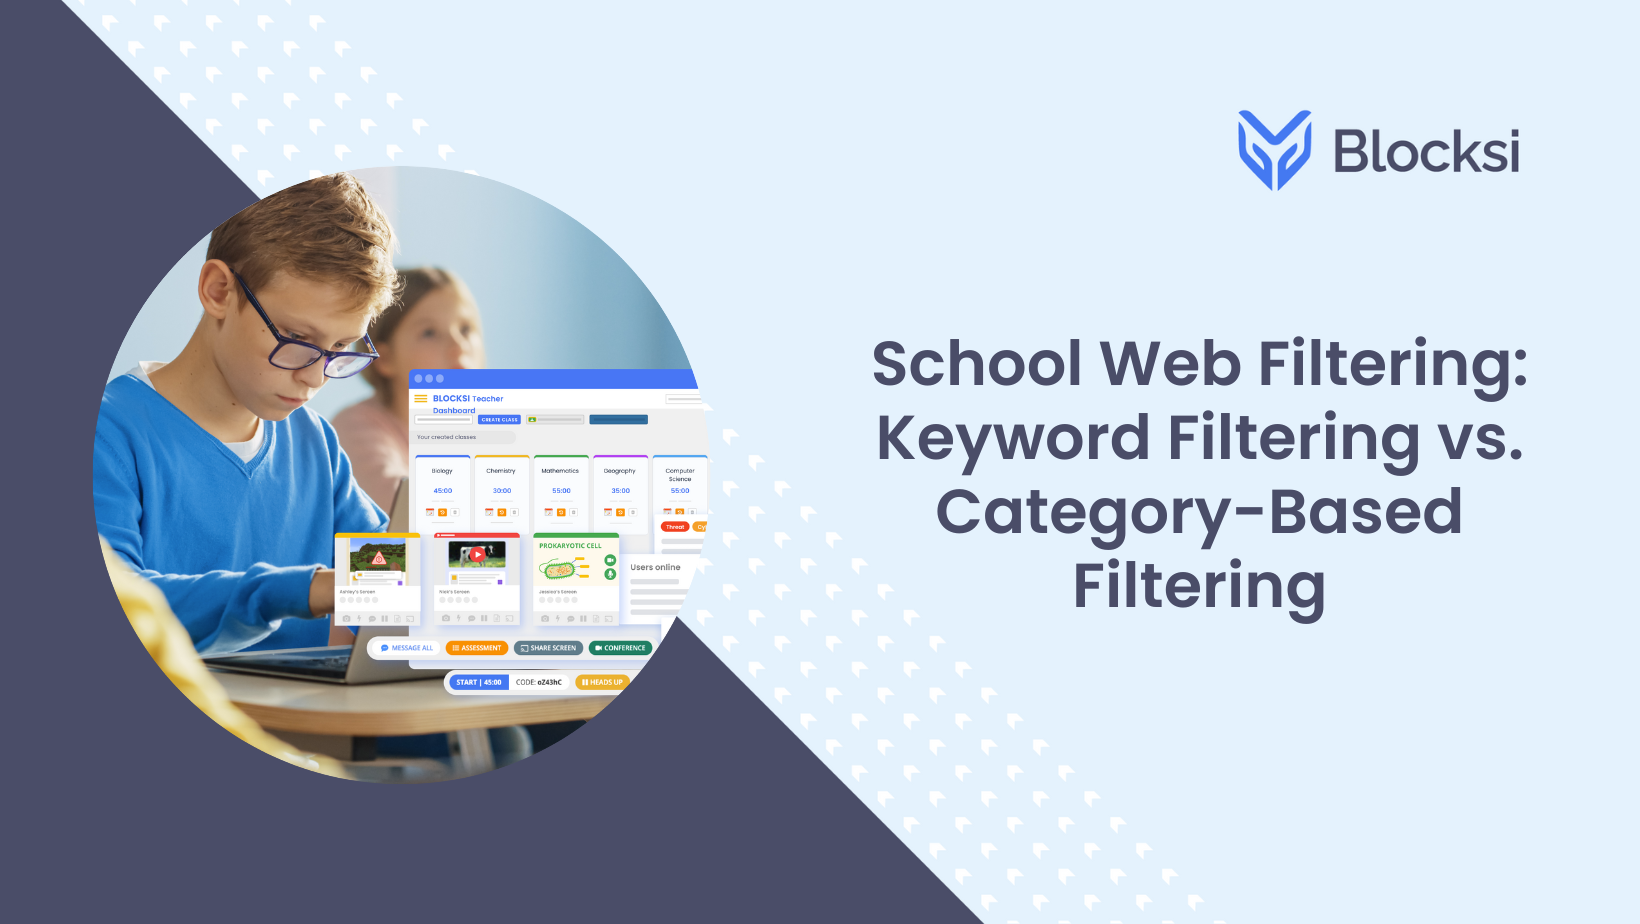 School Web Filtering: Keyword Filtering Vs. Category-Based Filtering